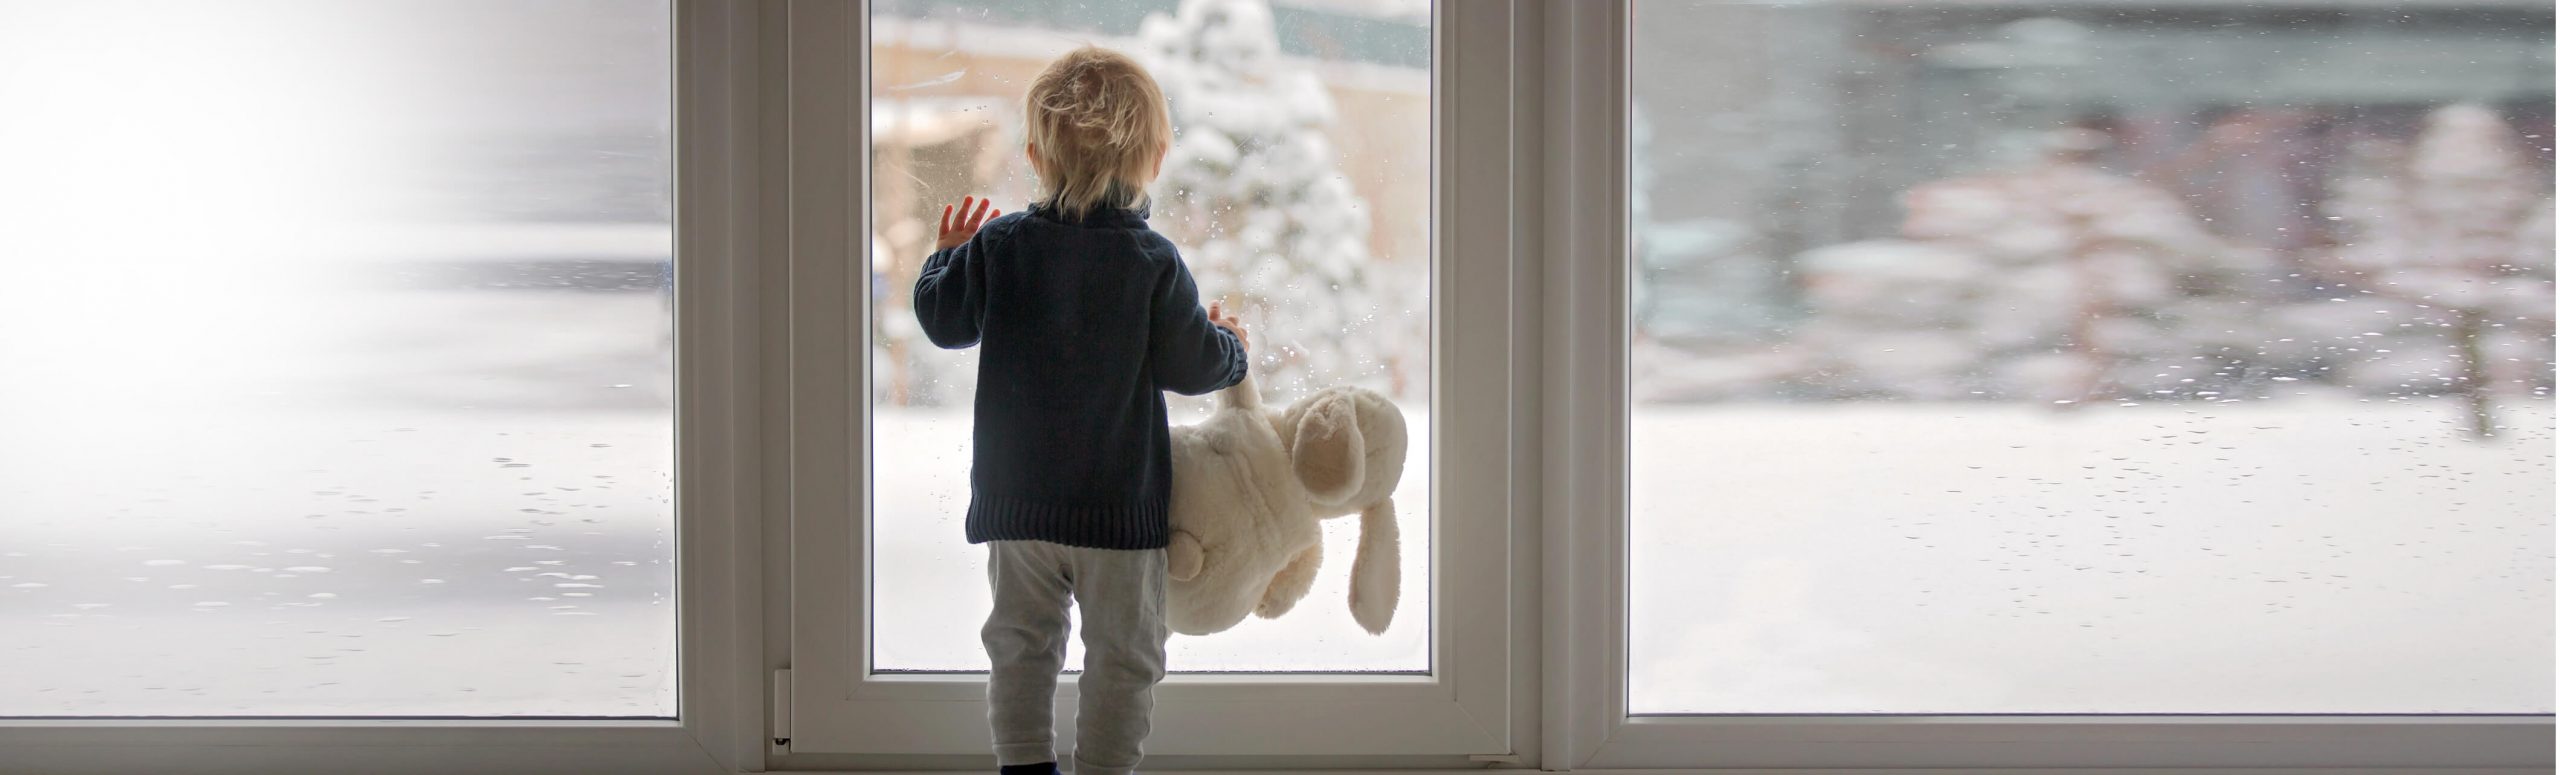 拿着玩具熊的小孩在雪看窗口